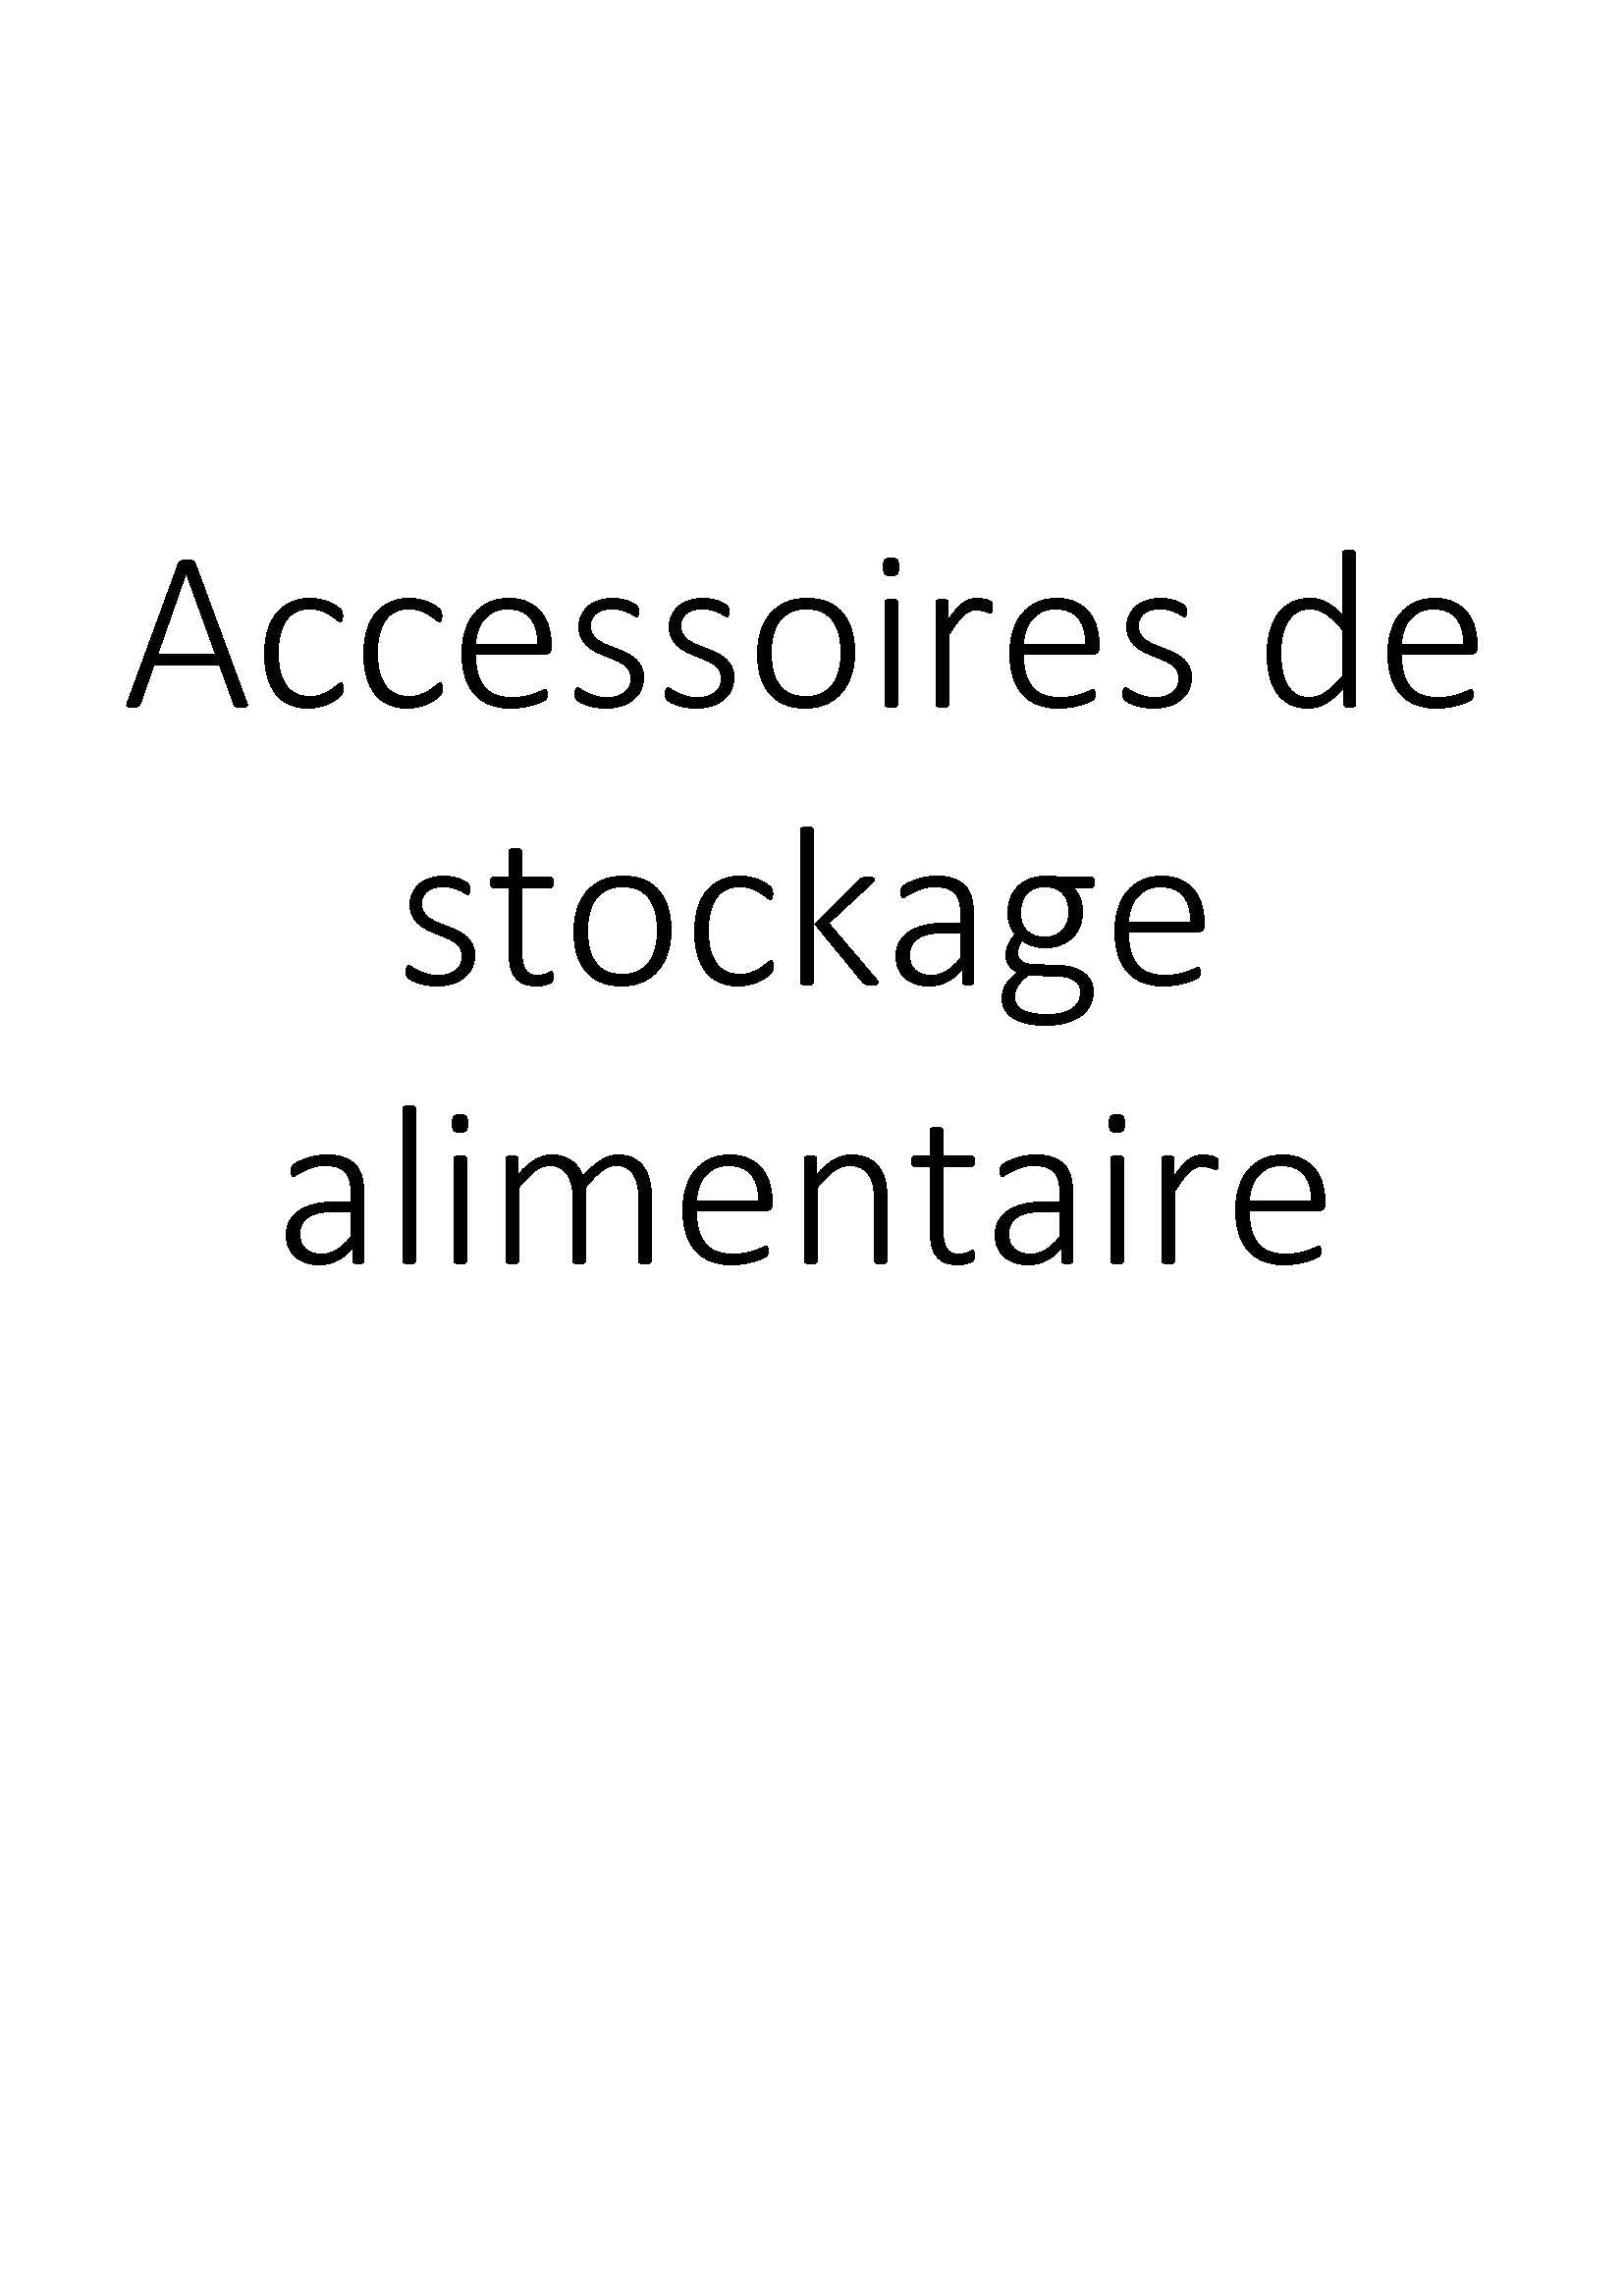 Accessoires de stockage alimentaire clicktofournisseur.com